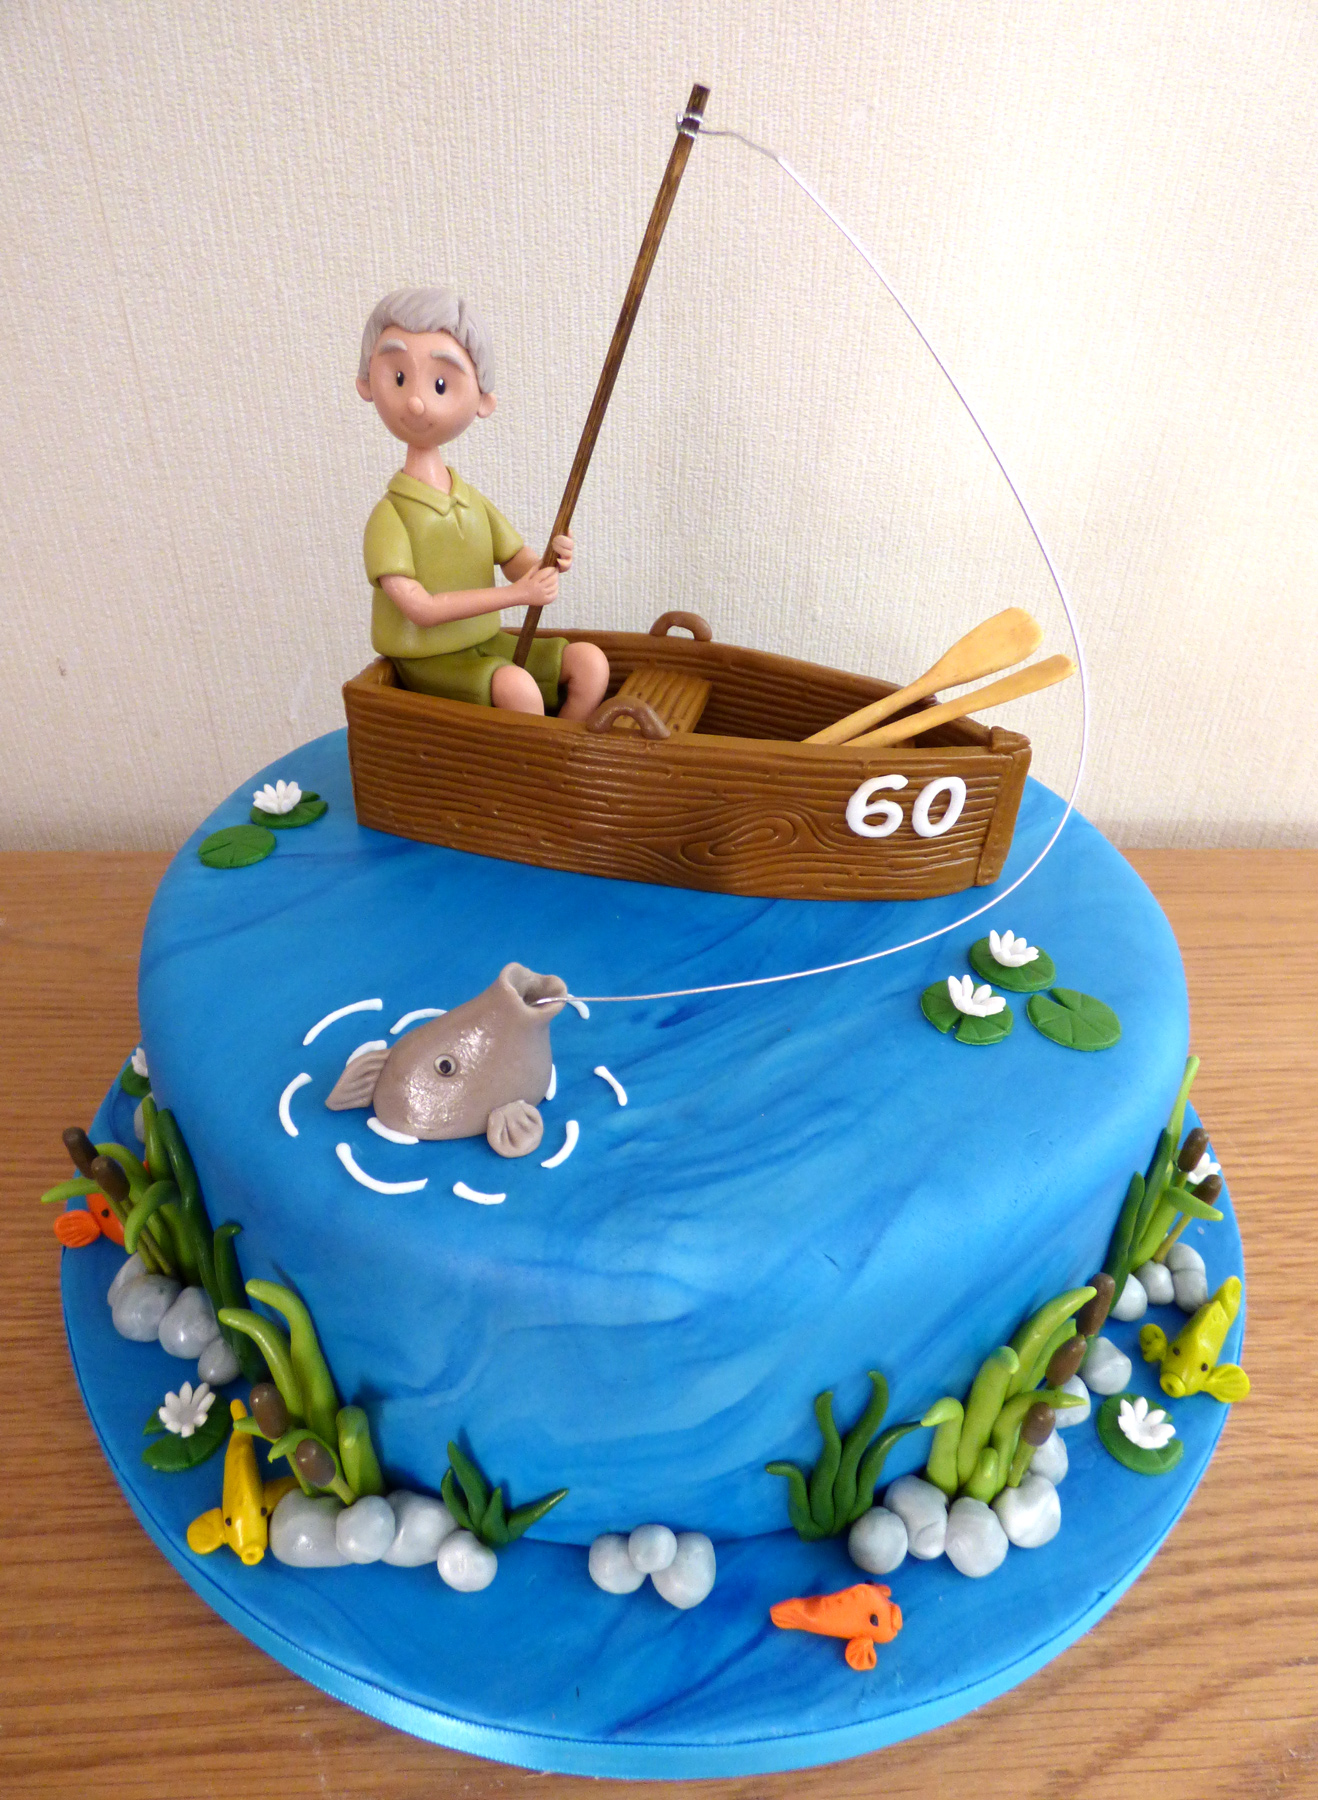 Fishing cake - Decorated Cake by Nicoleta - CakesDecor